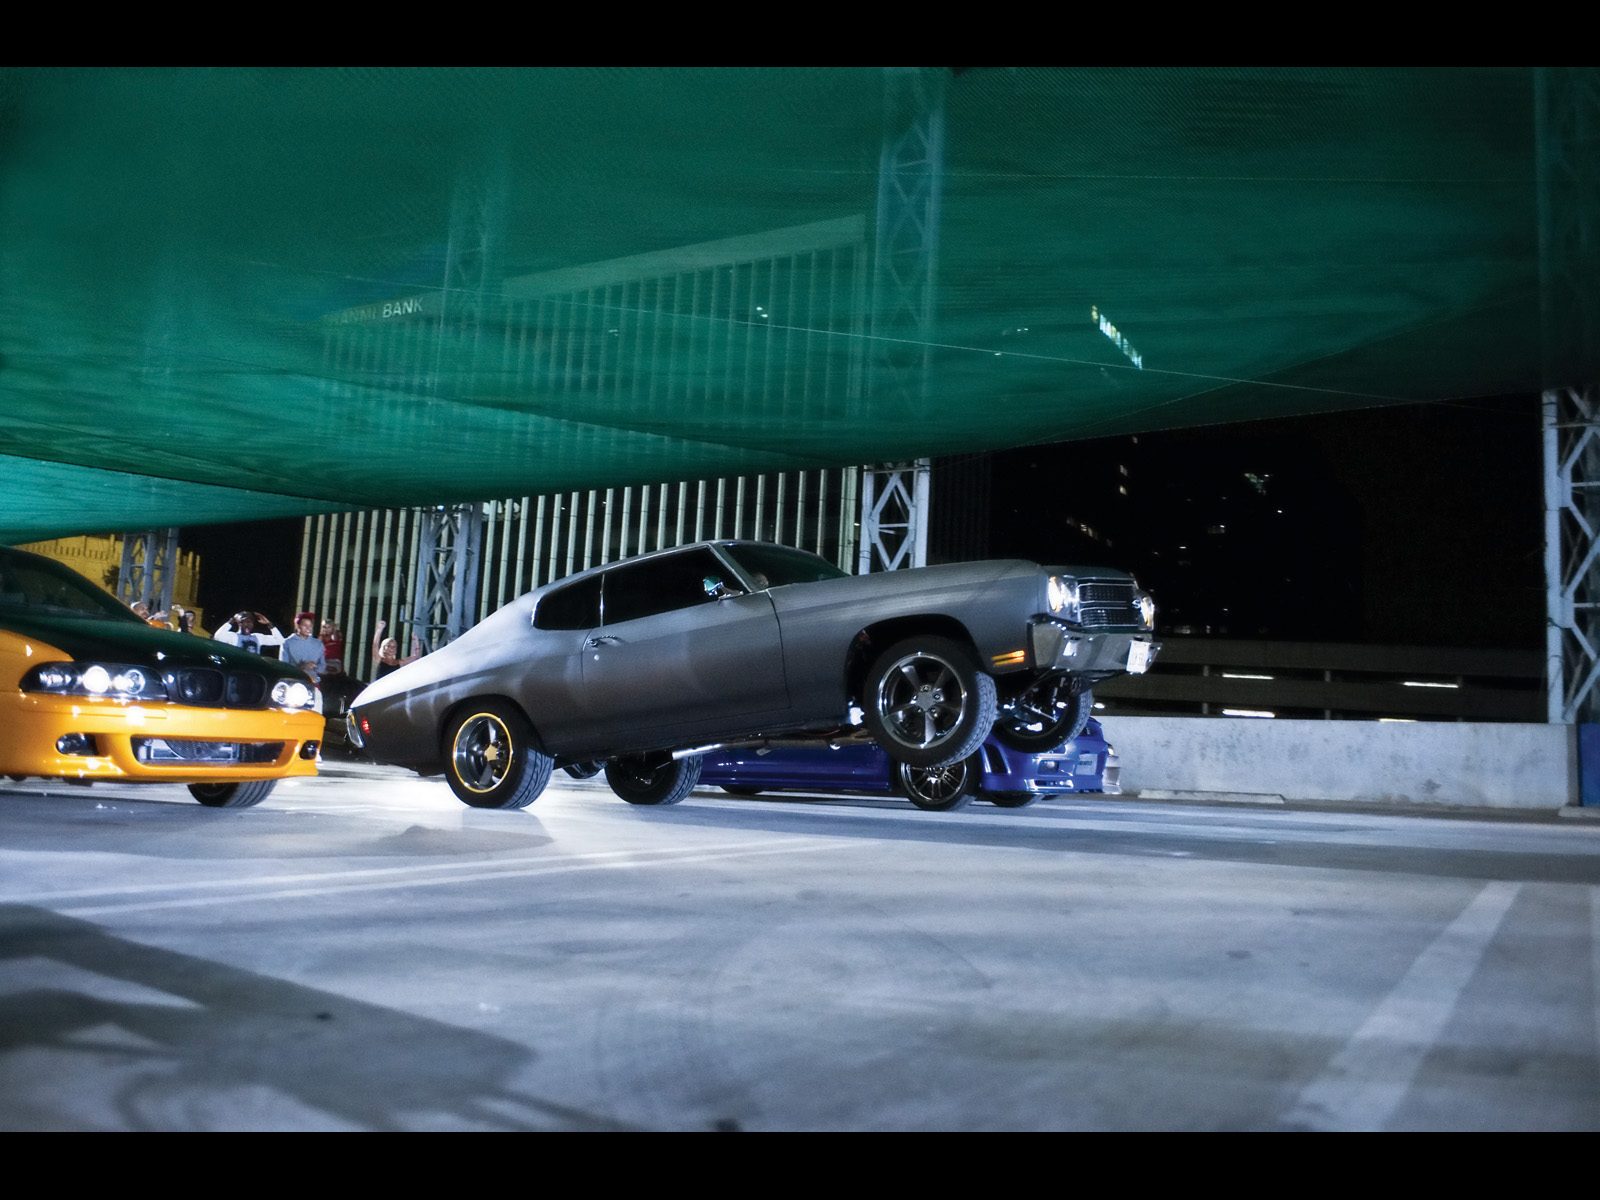 Fast-And-Furious-Movie-Cars-Chevelle-Wheelie-1600x1200.jpg